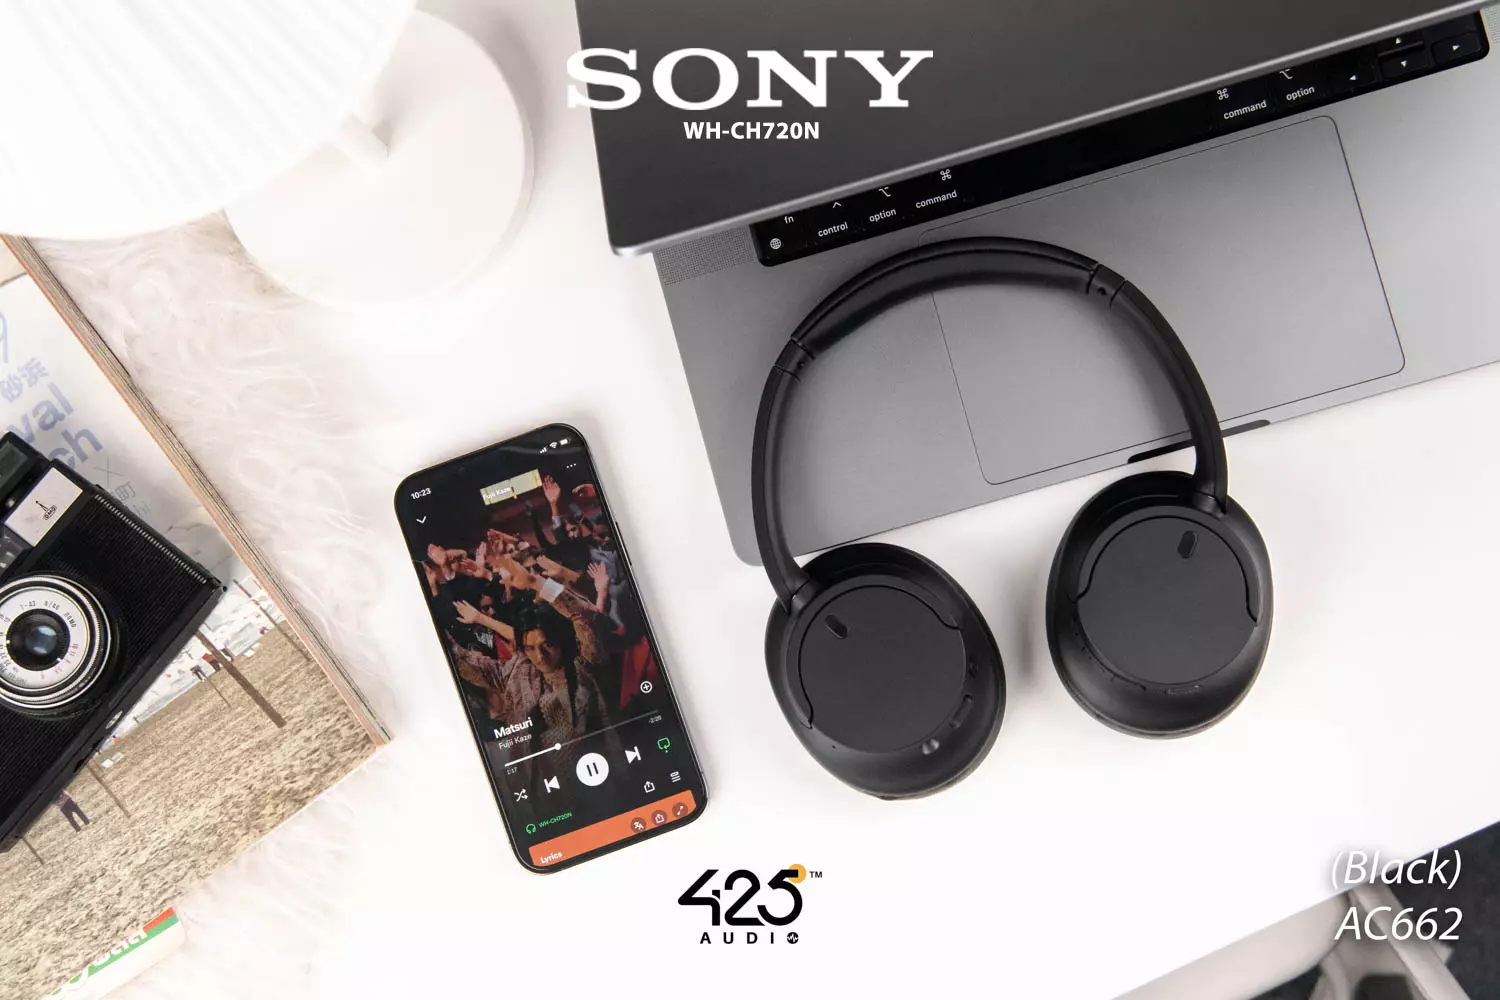 หูฟังไร้สาย Sony WH-CH720N Full Size Headphones รีวิวชัด คัดของดี